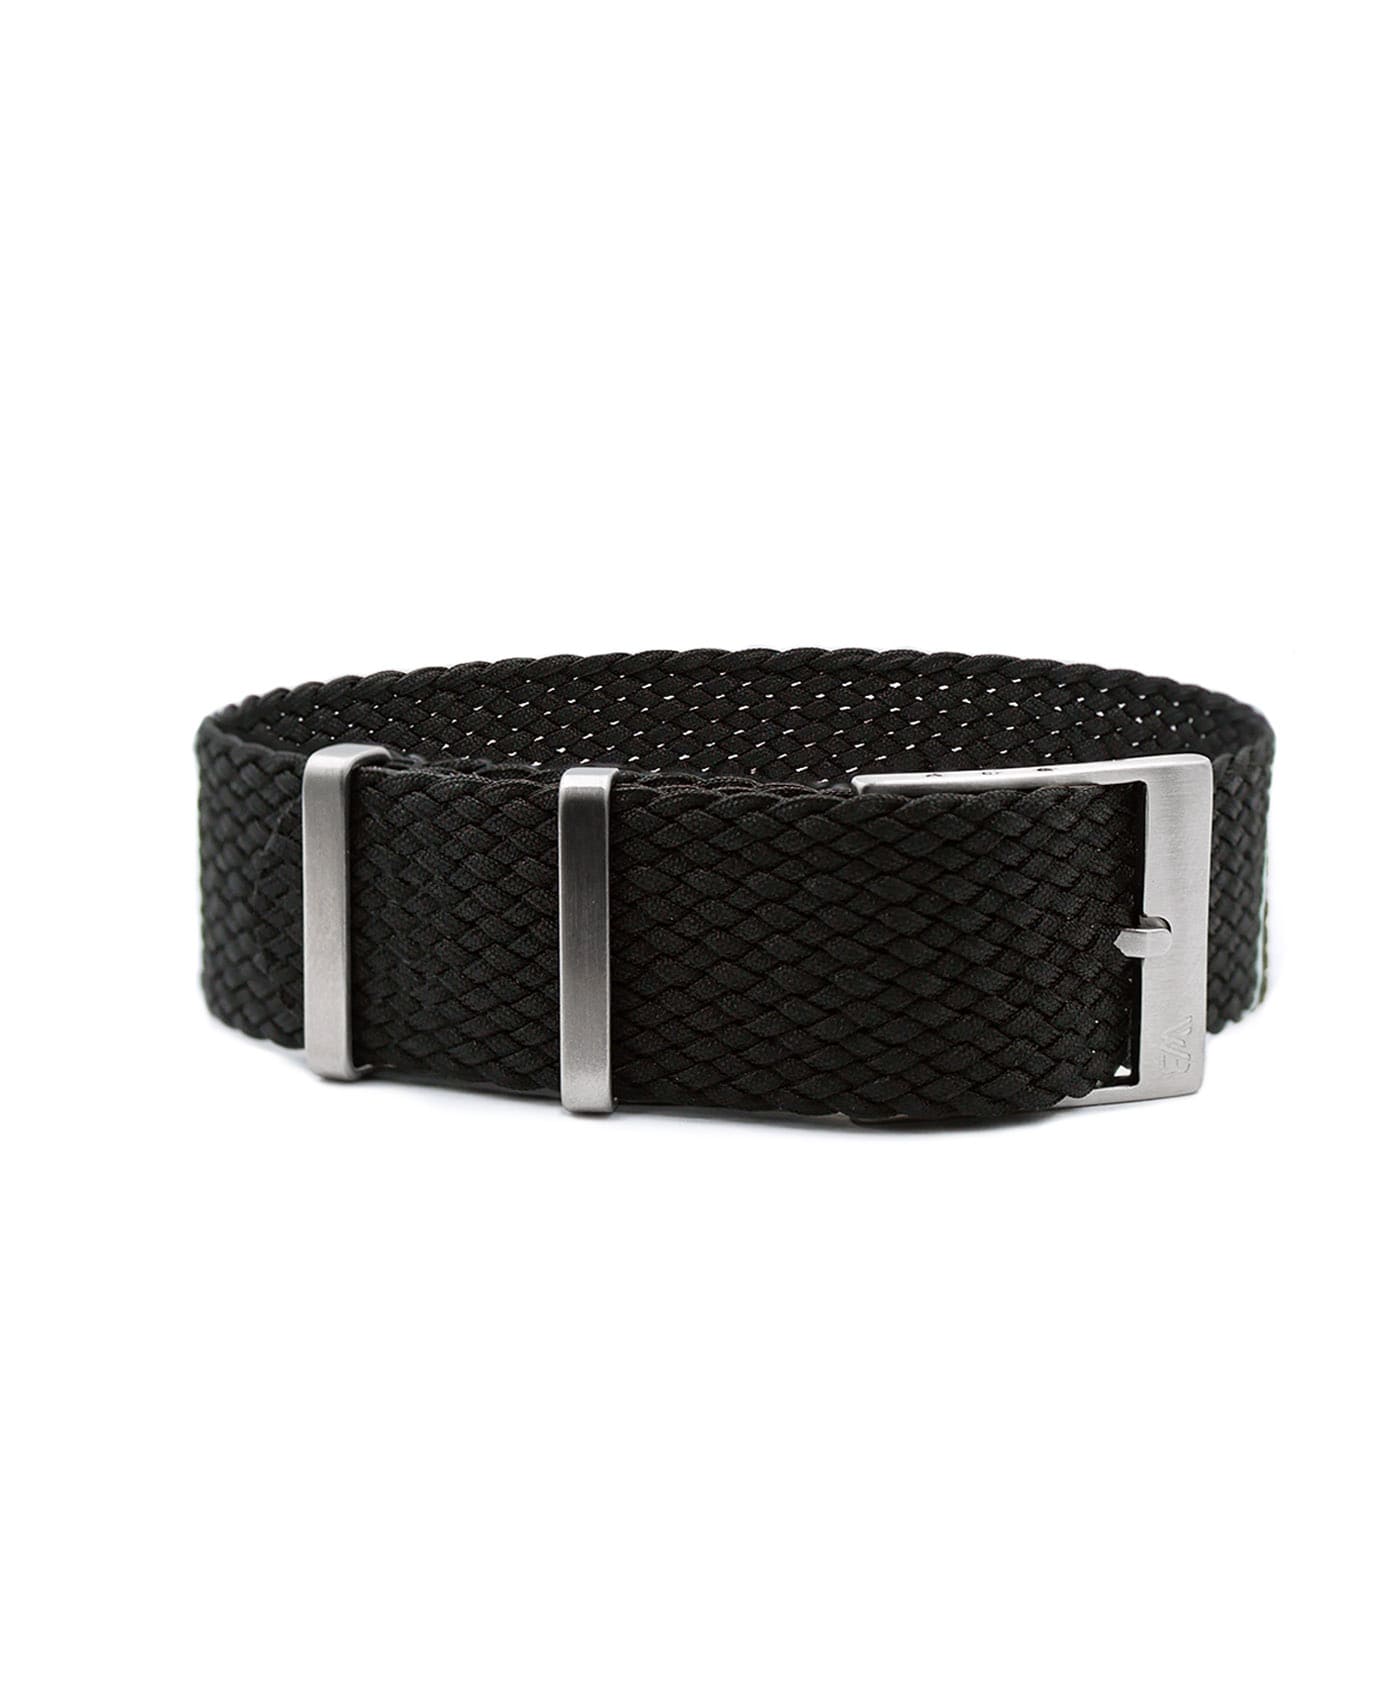 Watchbandit Premium Perlon Watch Strap - Black